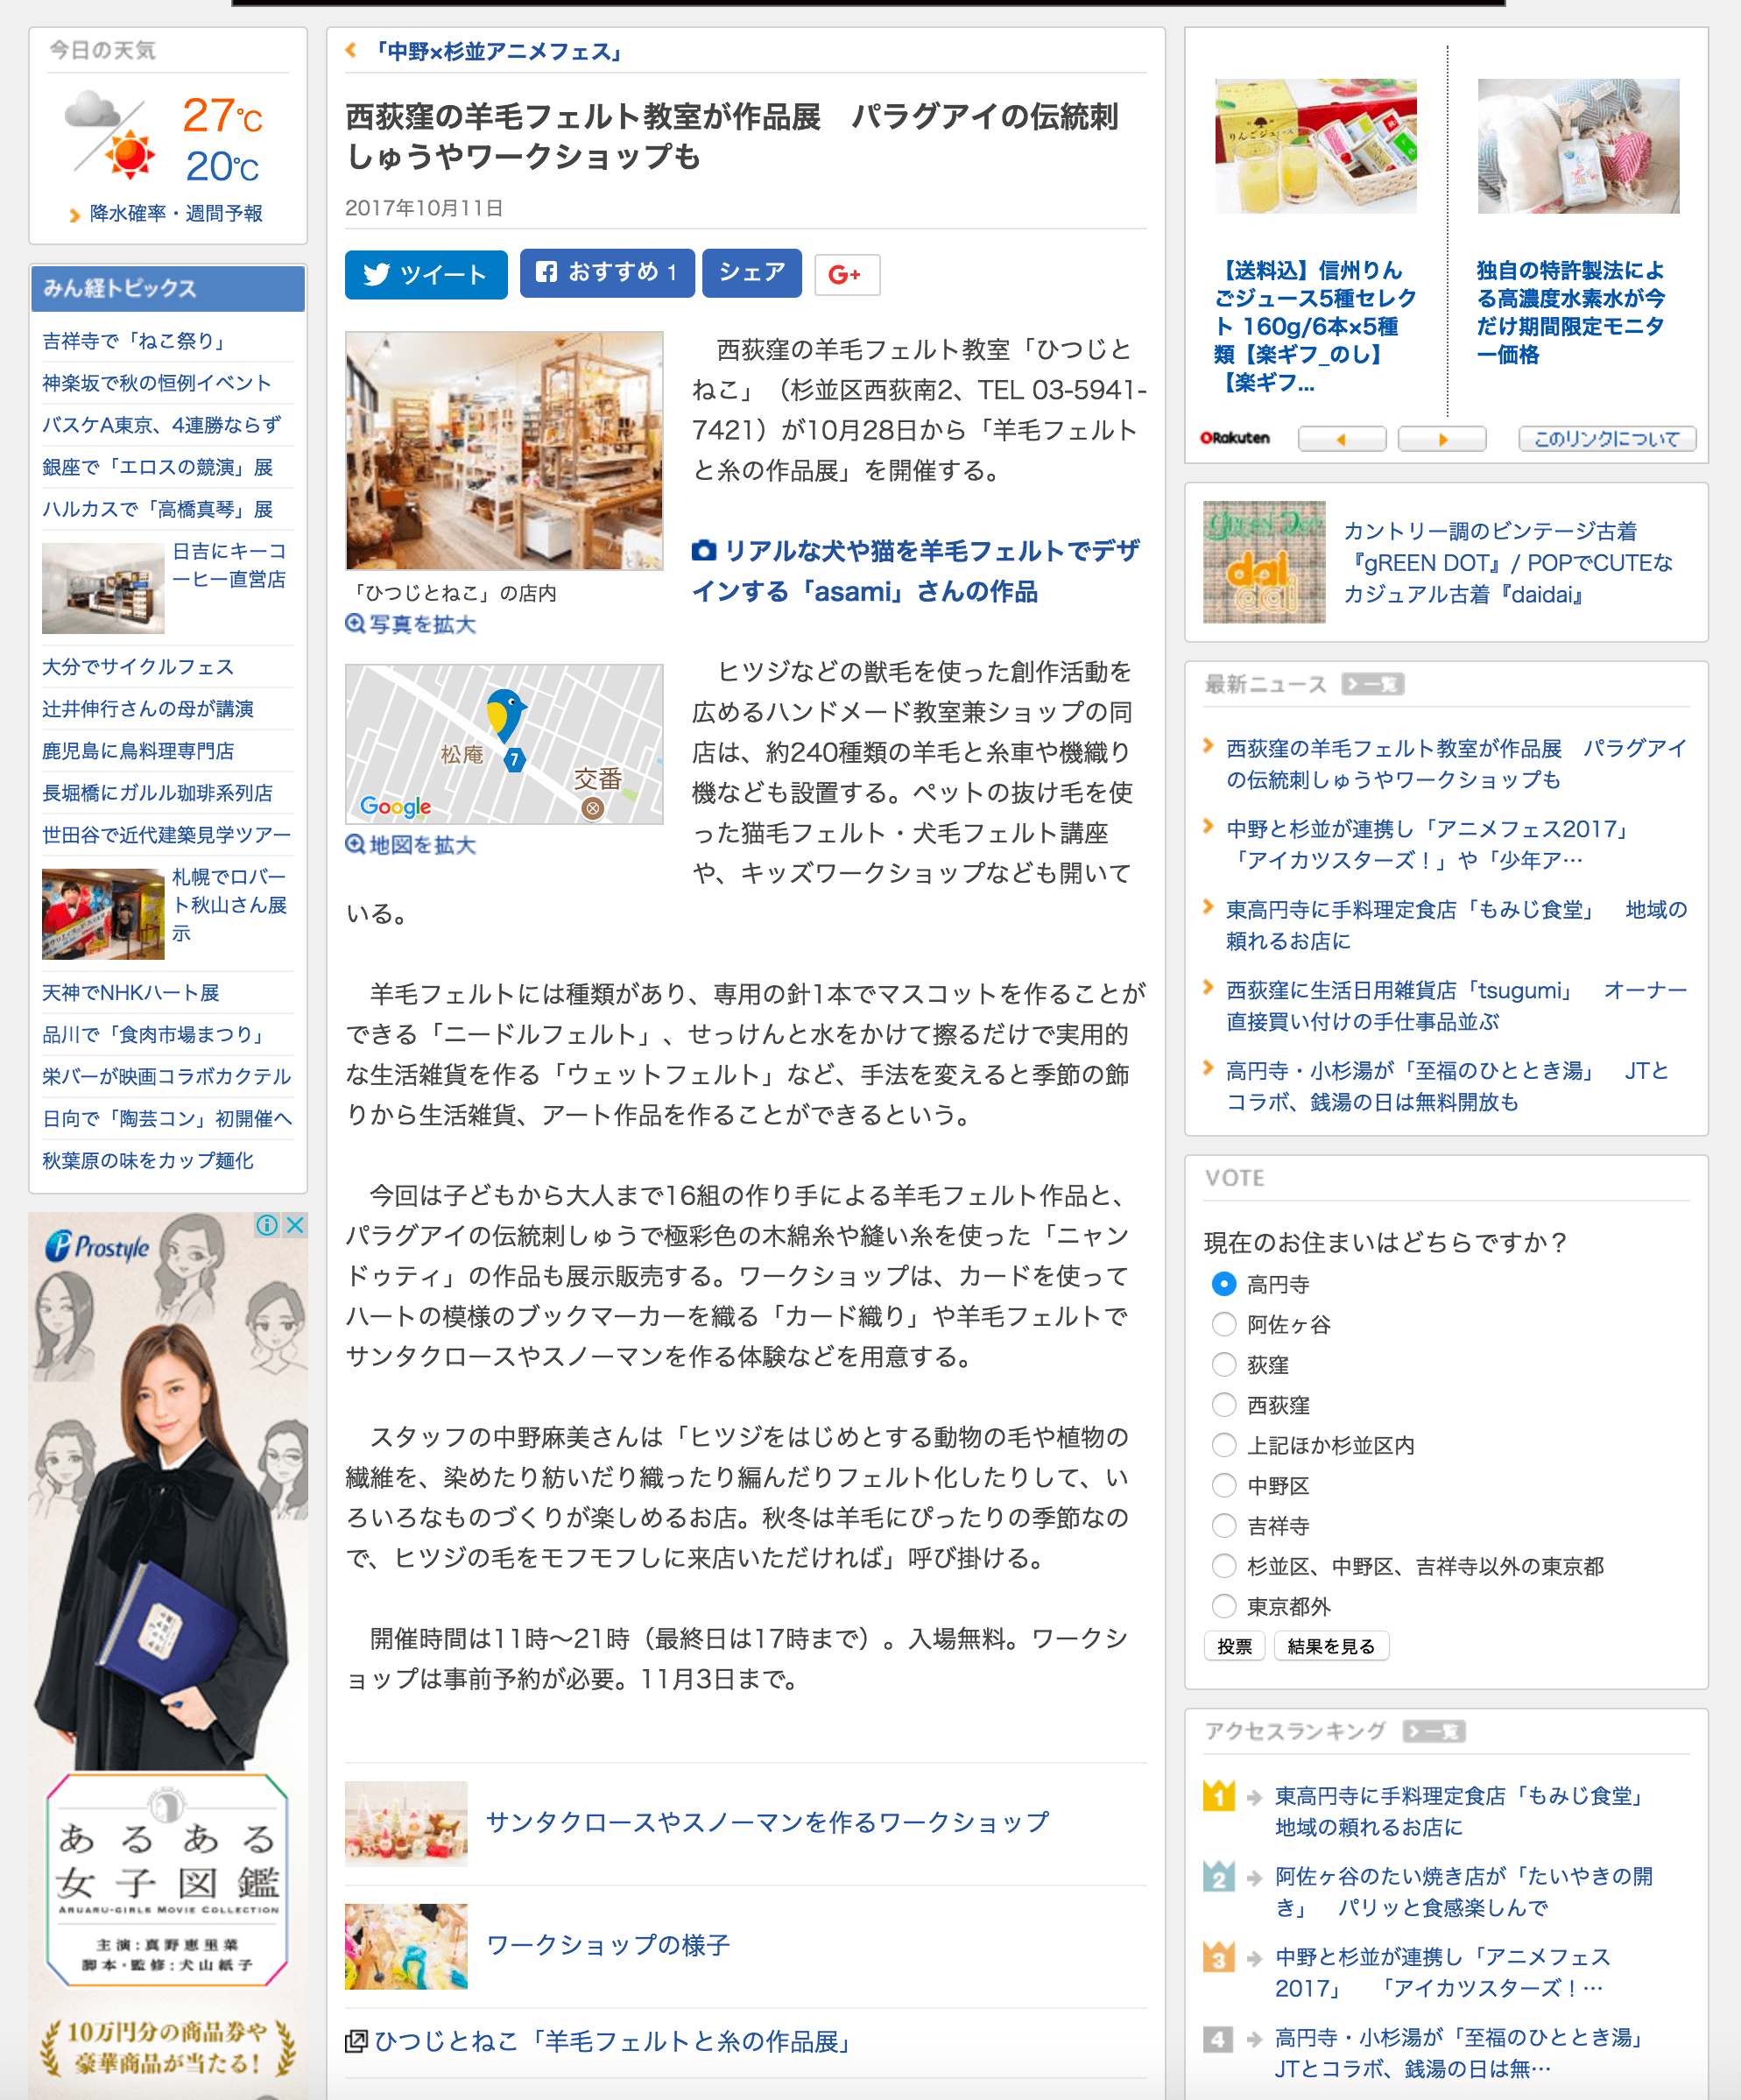 高円寺経済新聞